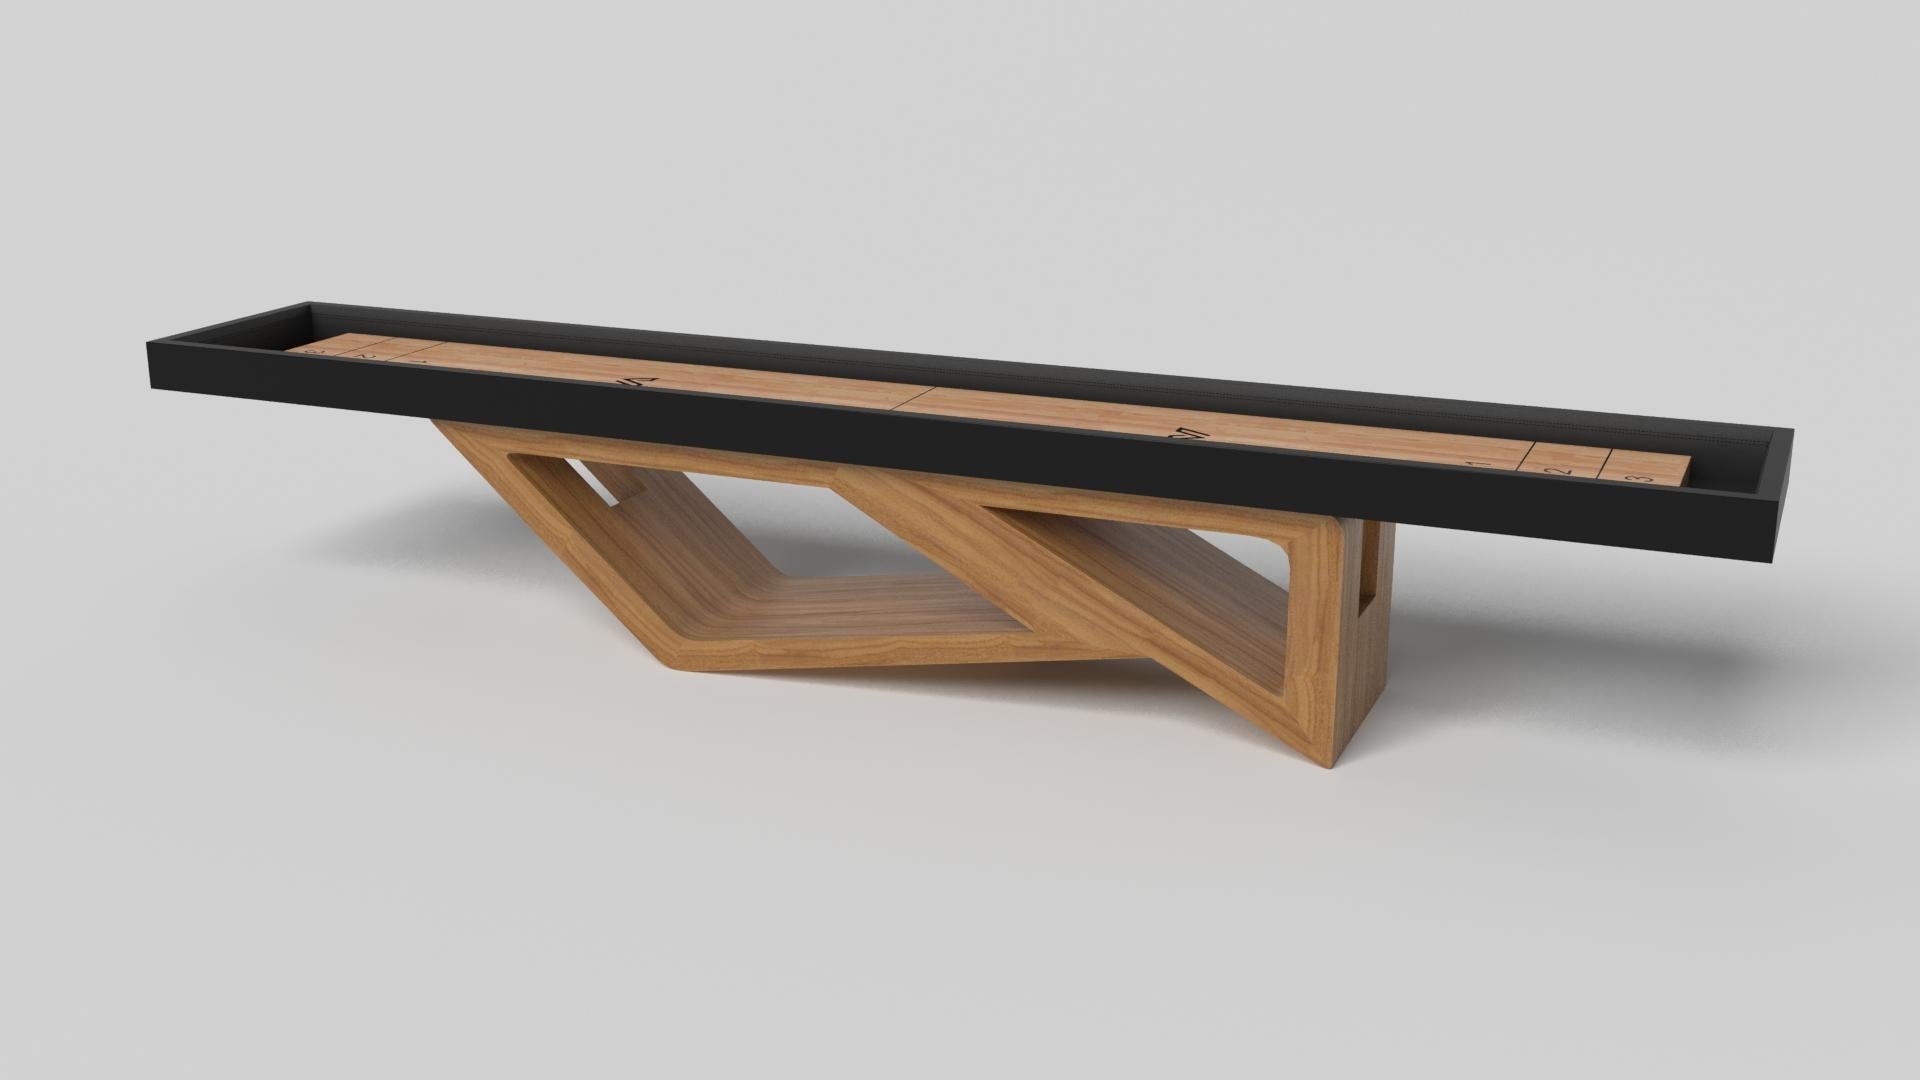 S'inspirant de la beauté des formes géométriques, la table de shuffleboard Rumba en aluminium brossé se caractérise par une série de formes creuses et pleines qui forment une base asymétrique décalée. Dotée d'un plateau en bois d'érable lisse de